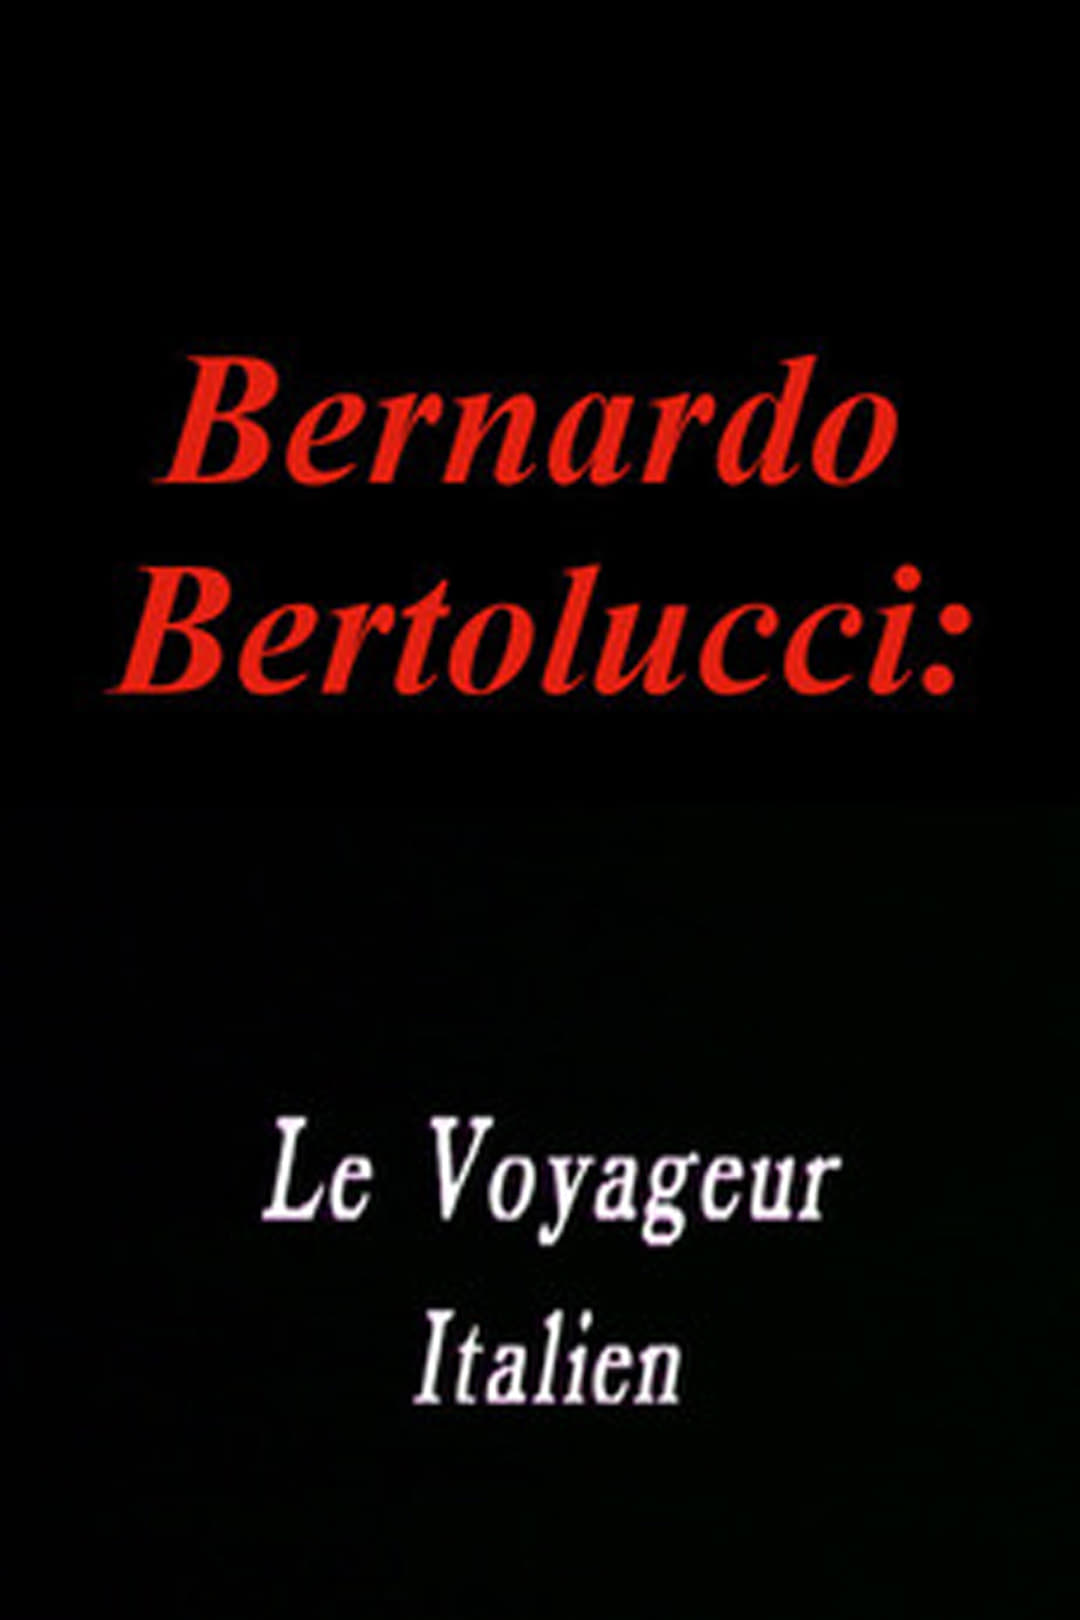 Bernardo Bertolucci: The Italian Traveler